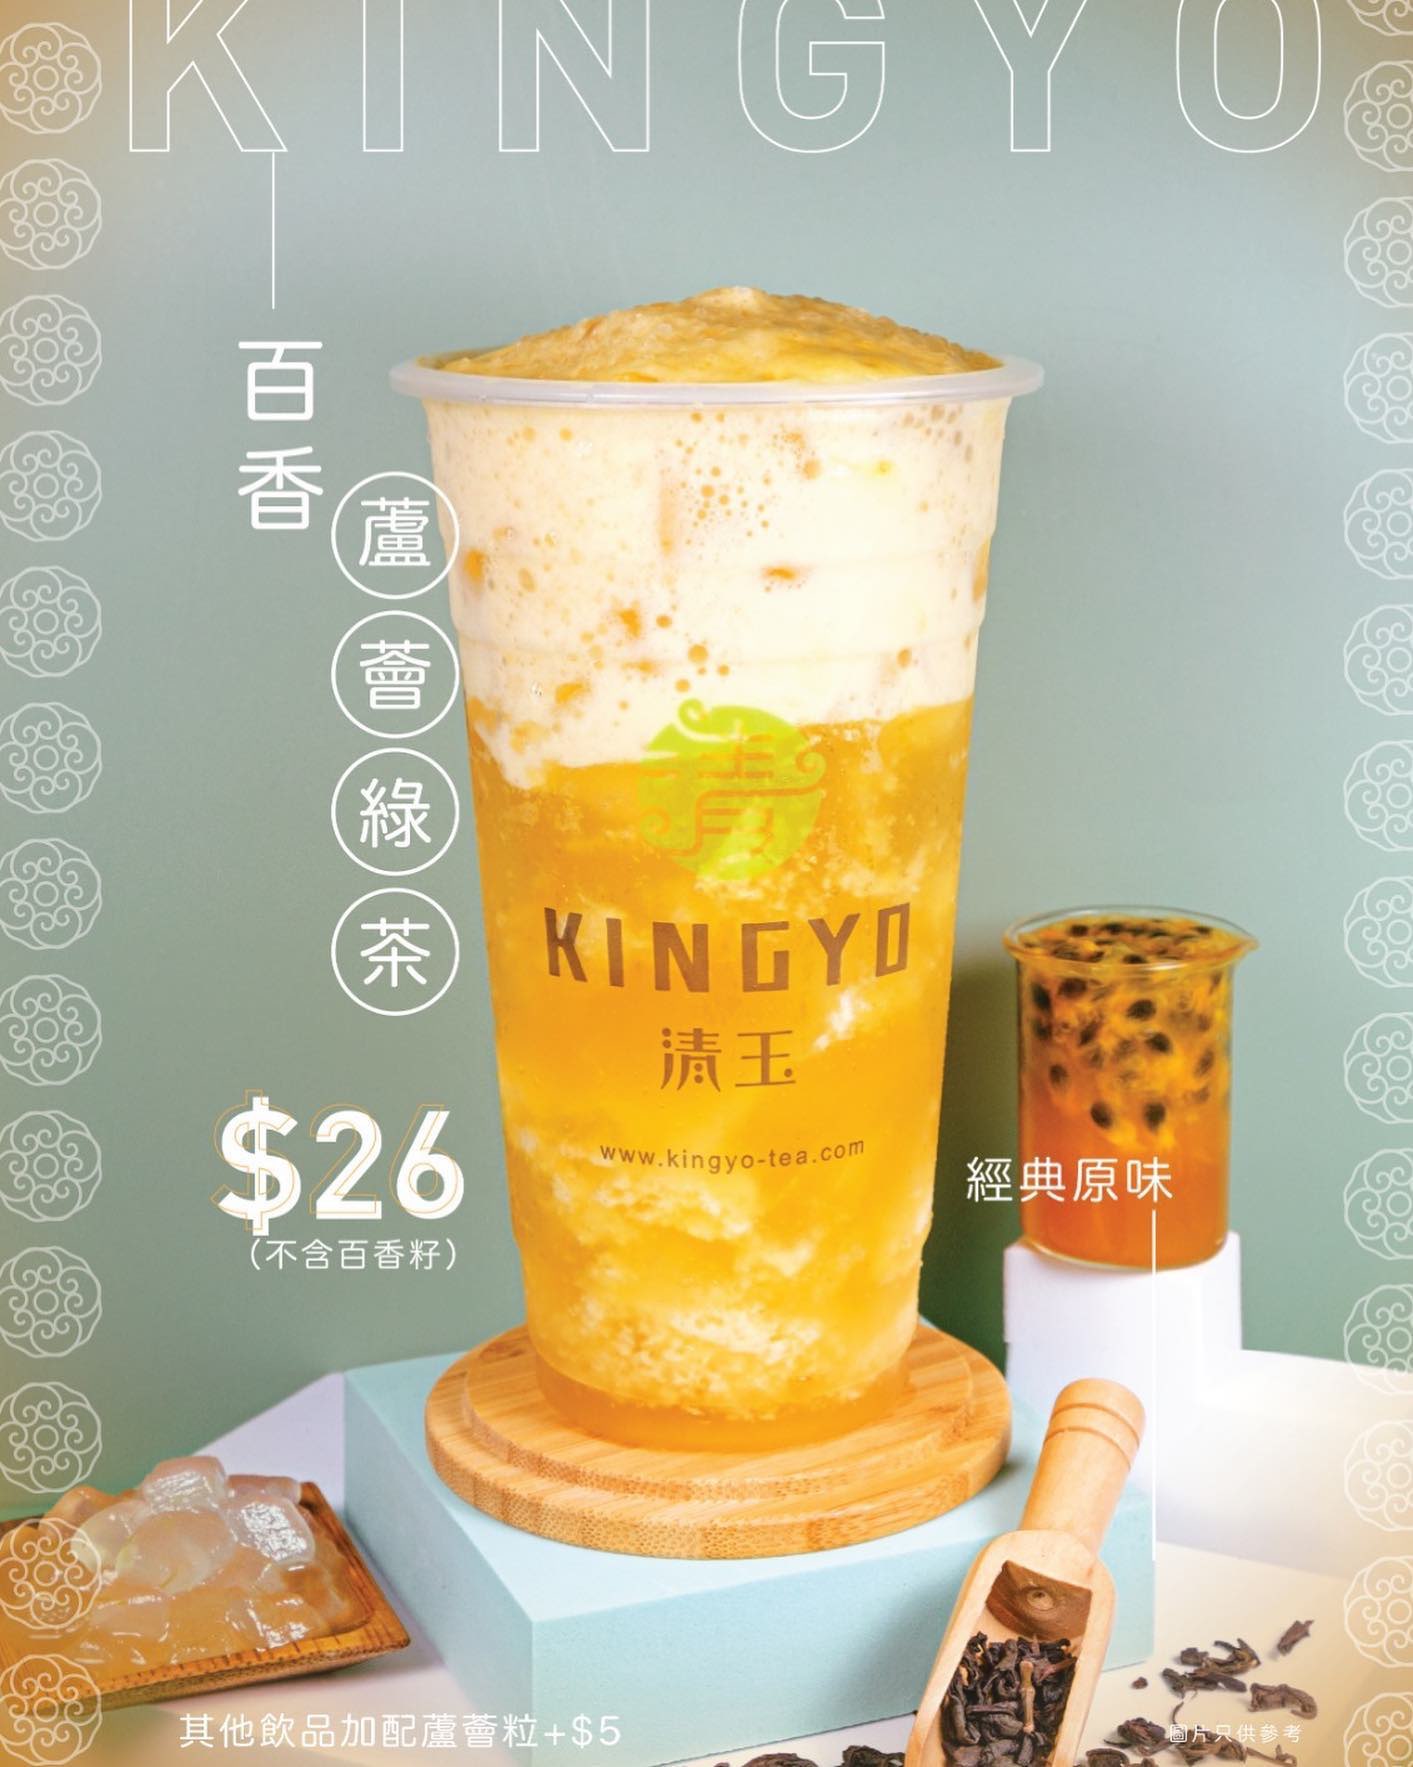 清玉好茶Kingyo的特許經營香港區加盟店項目7